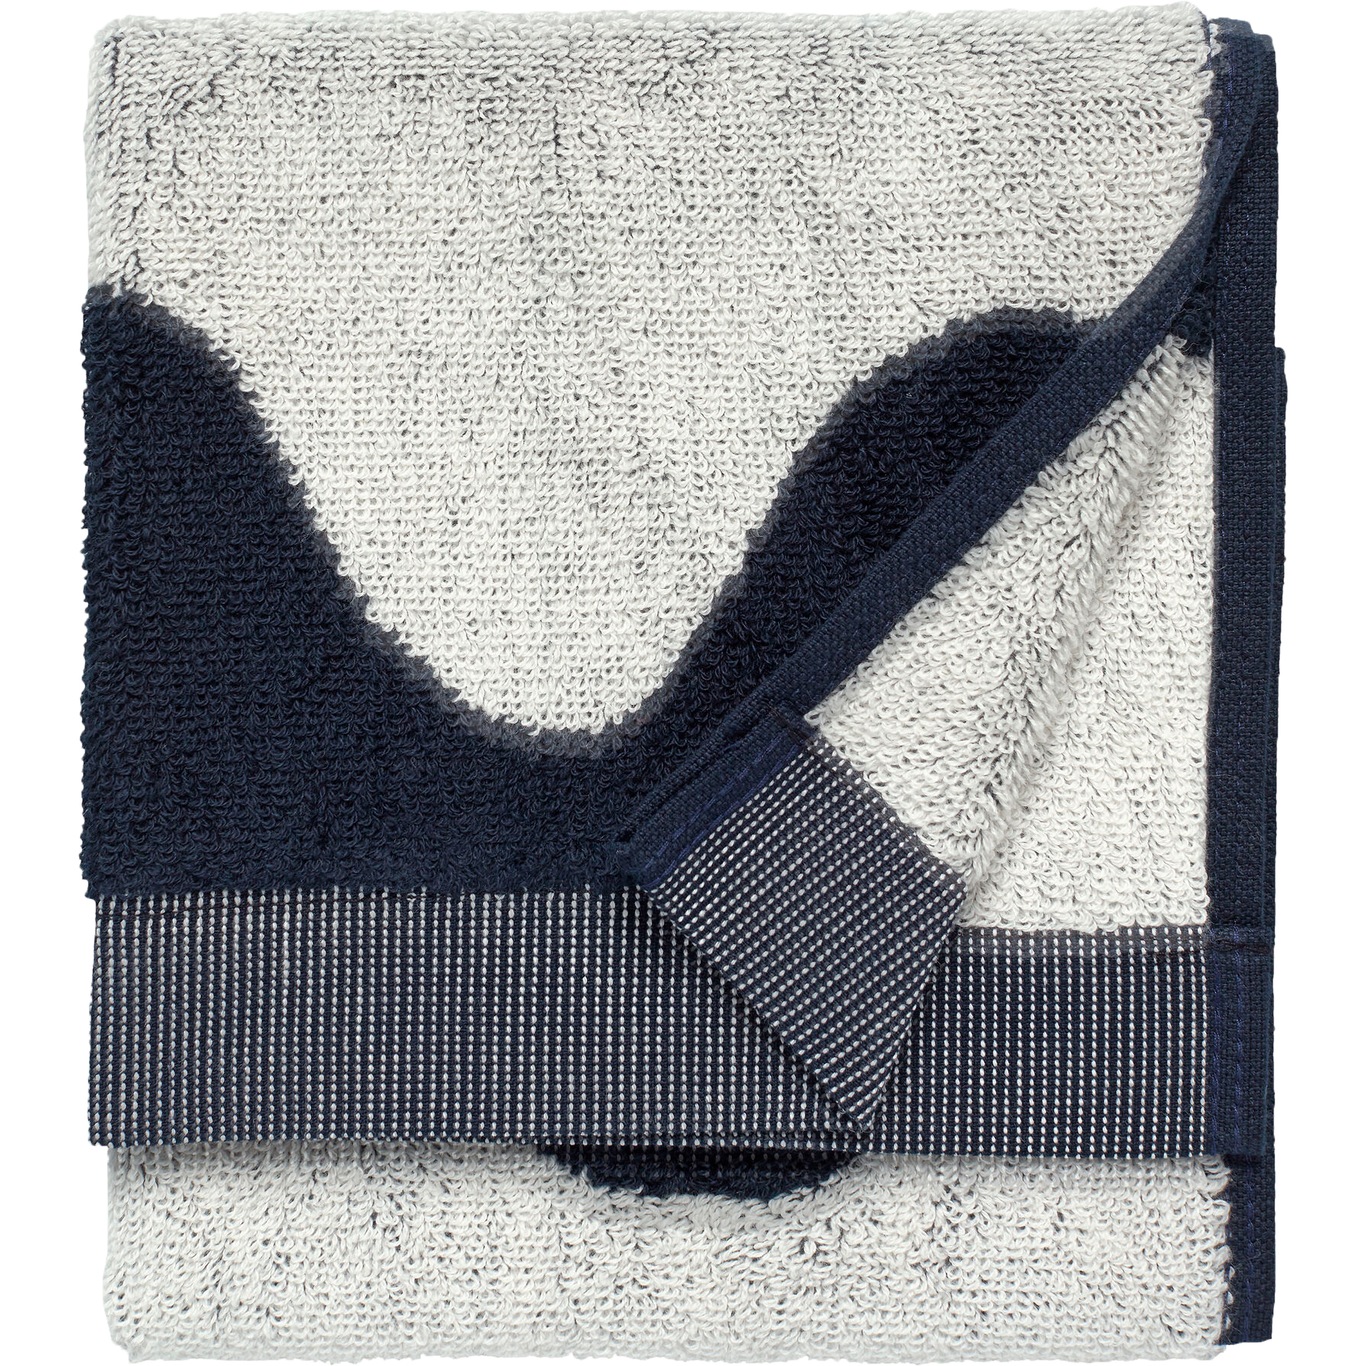 Lokki Gjestehåndkle Mørkeblå / Off-white, 30x50 cm